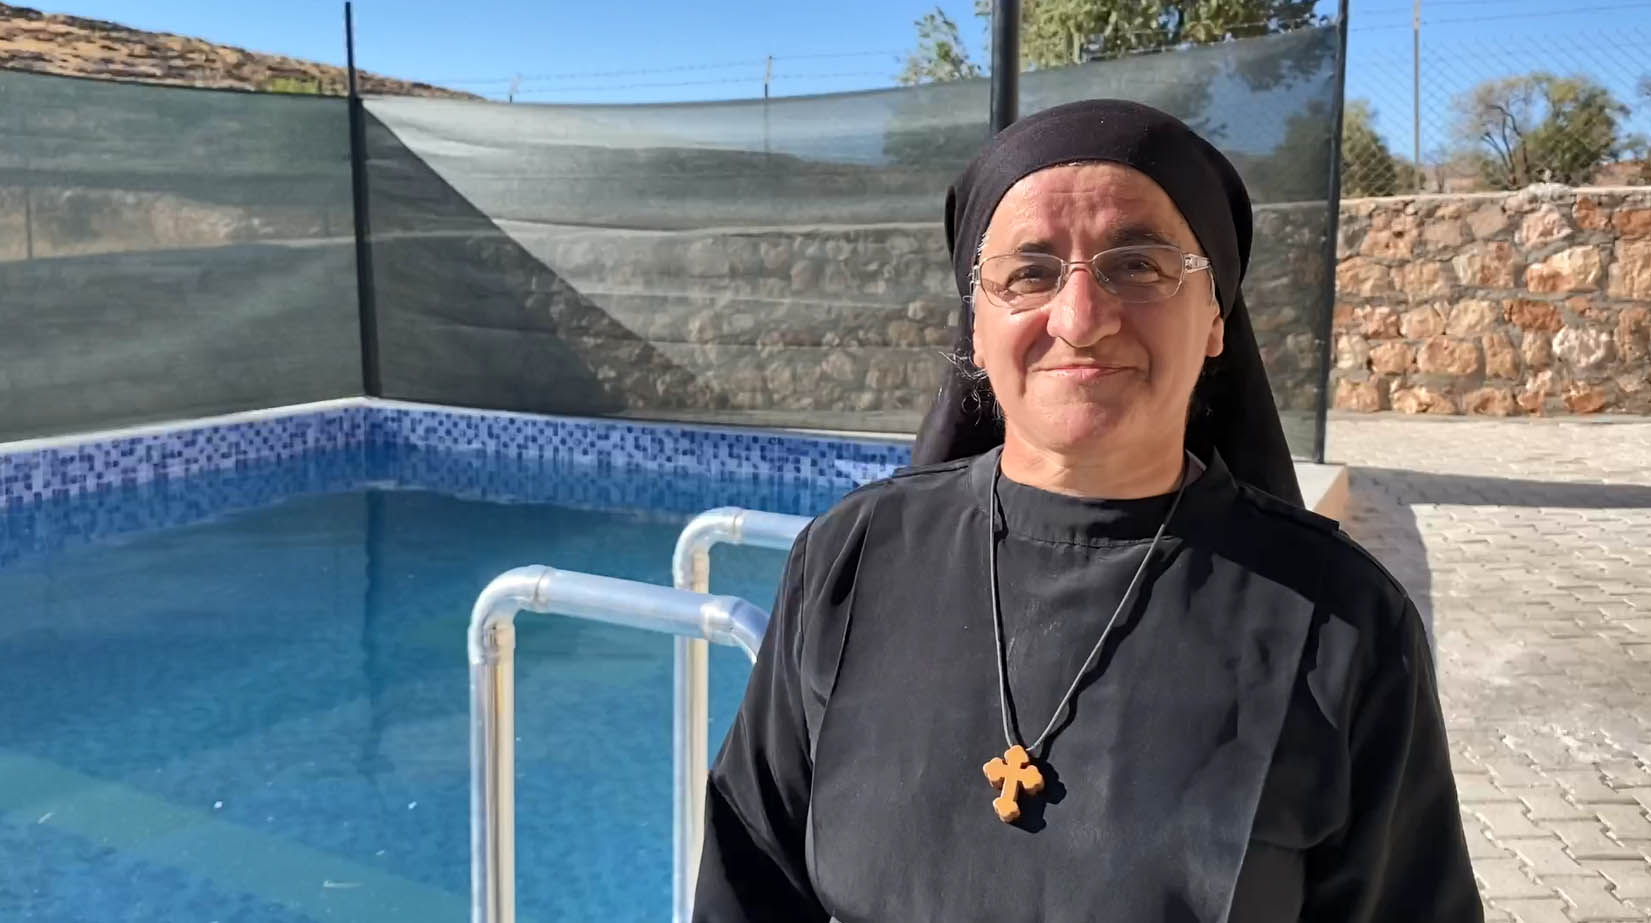 Süryani rahibe Hatune Doğan, 36 yıl sonra Midyat'a döndü